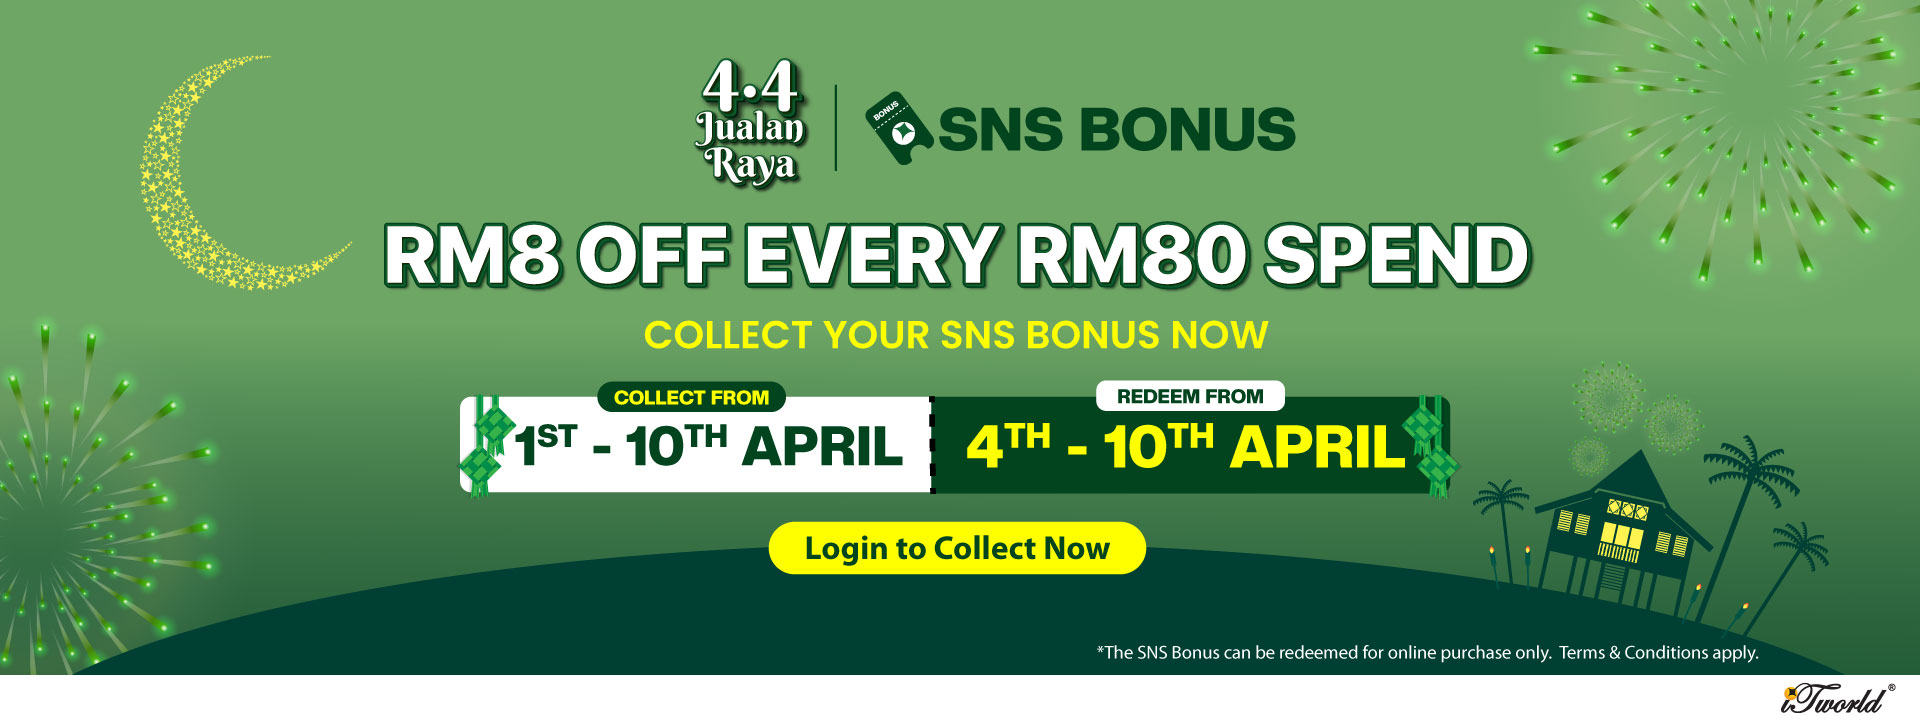 Collect SNS Bonus and save more on 4.4 Jualan Raya